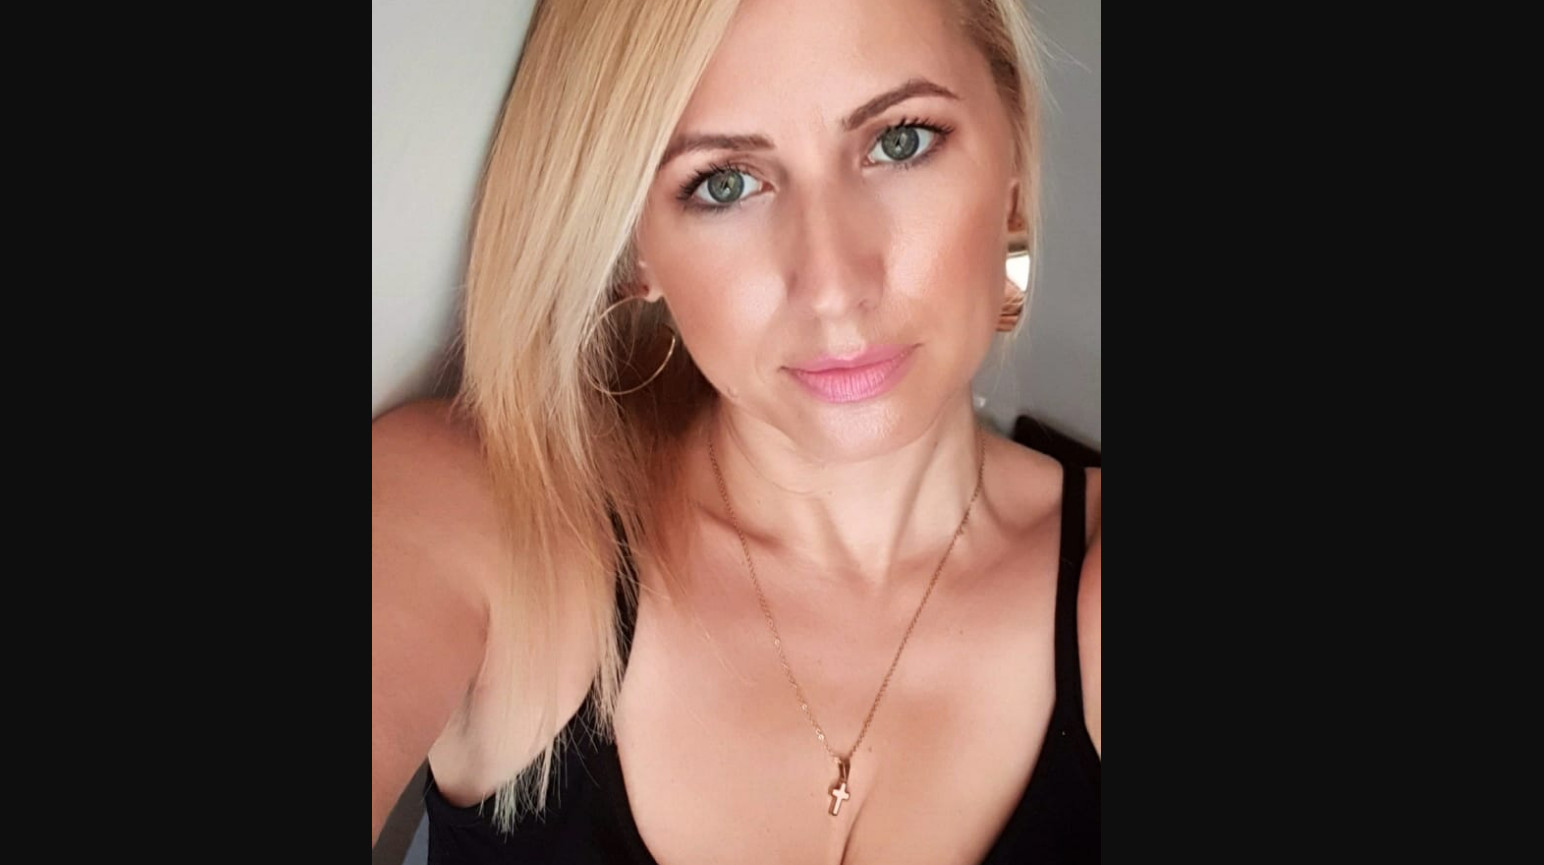 Κατερίνα Παπακωστοπούλου κορονοϊός: “Είχα τρεις μέρες πυρετό που δεν έπεφτε”